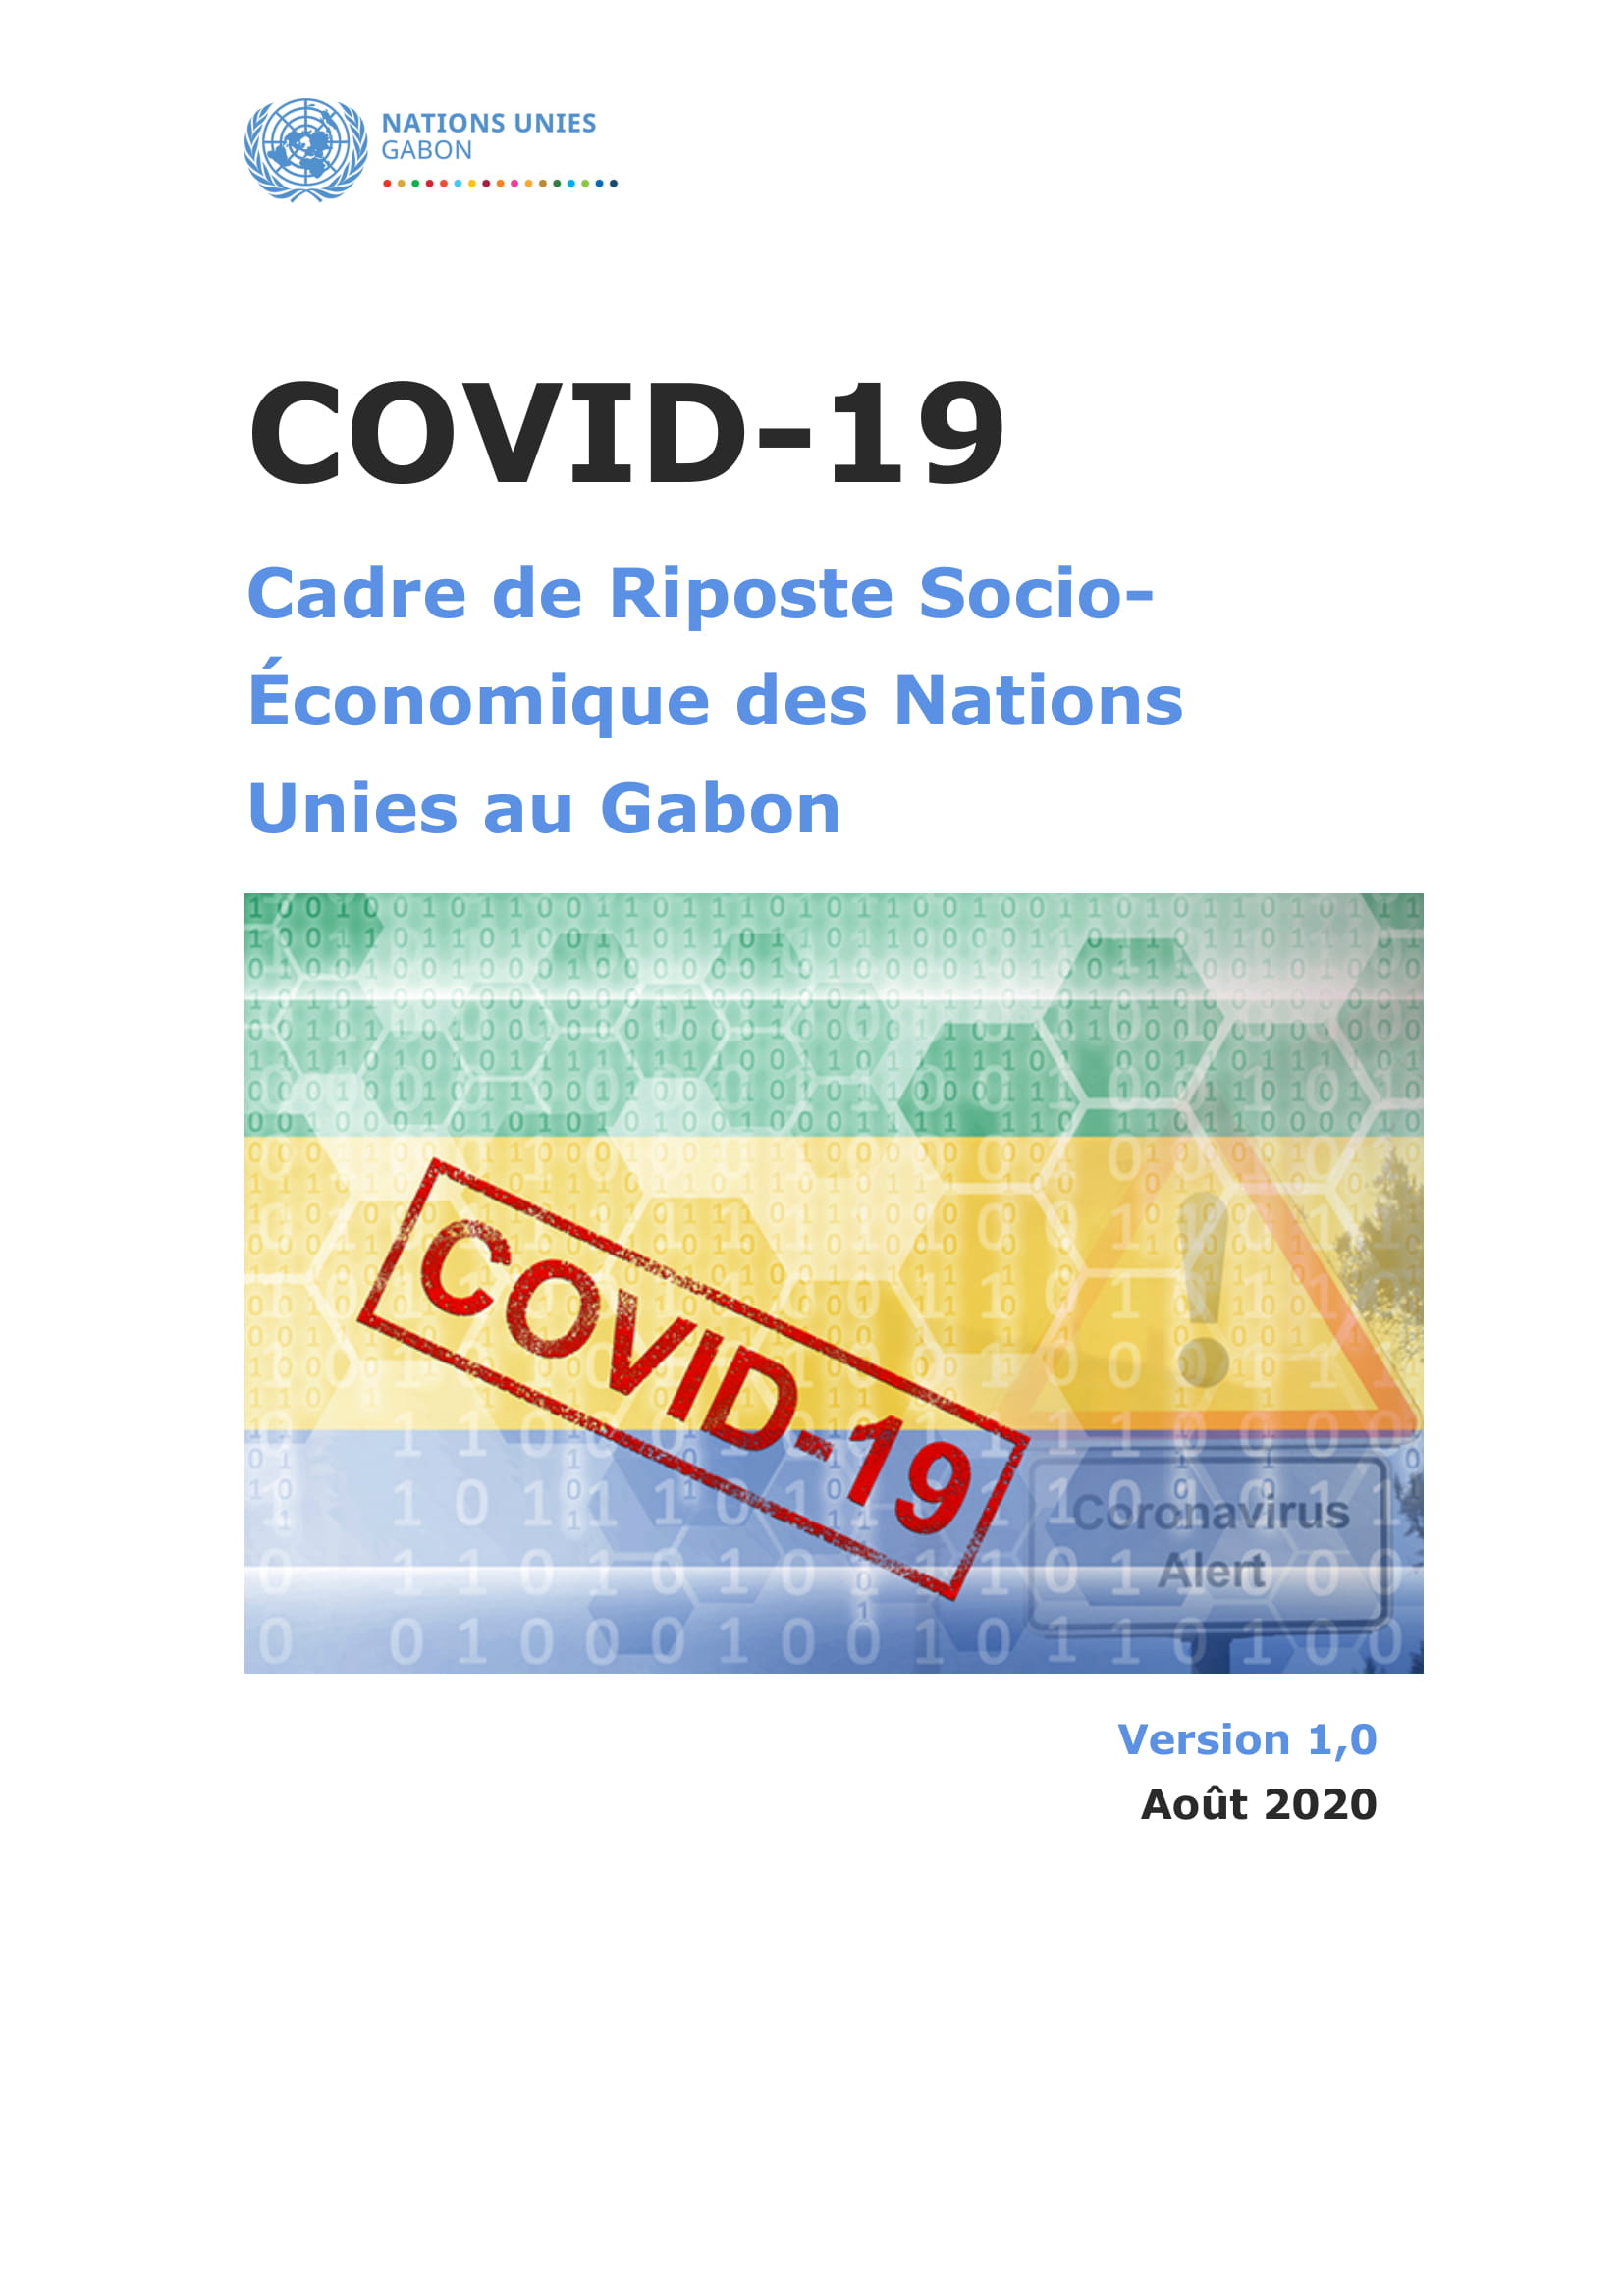 COVID-19: Cadre de riposte Socio-économique des Nations Unies au Gabon